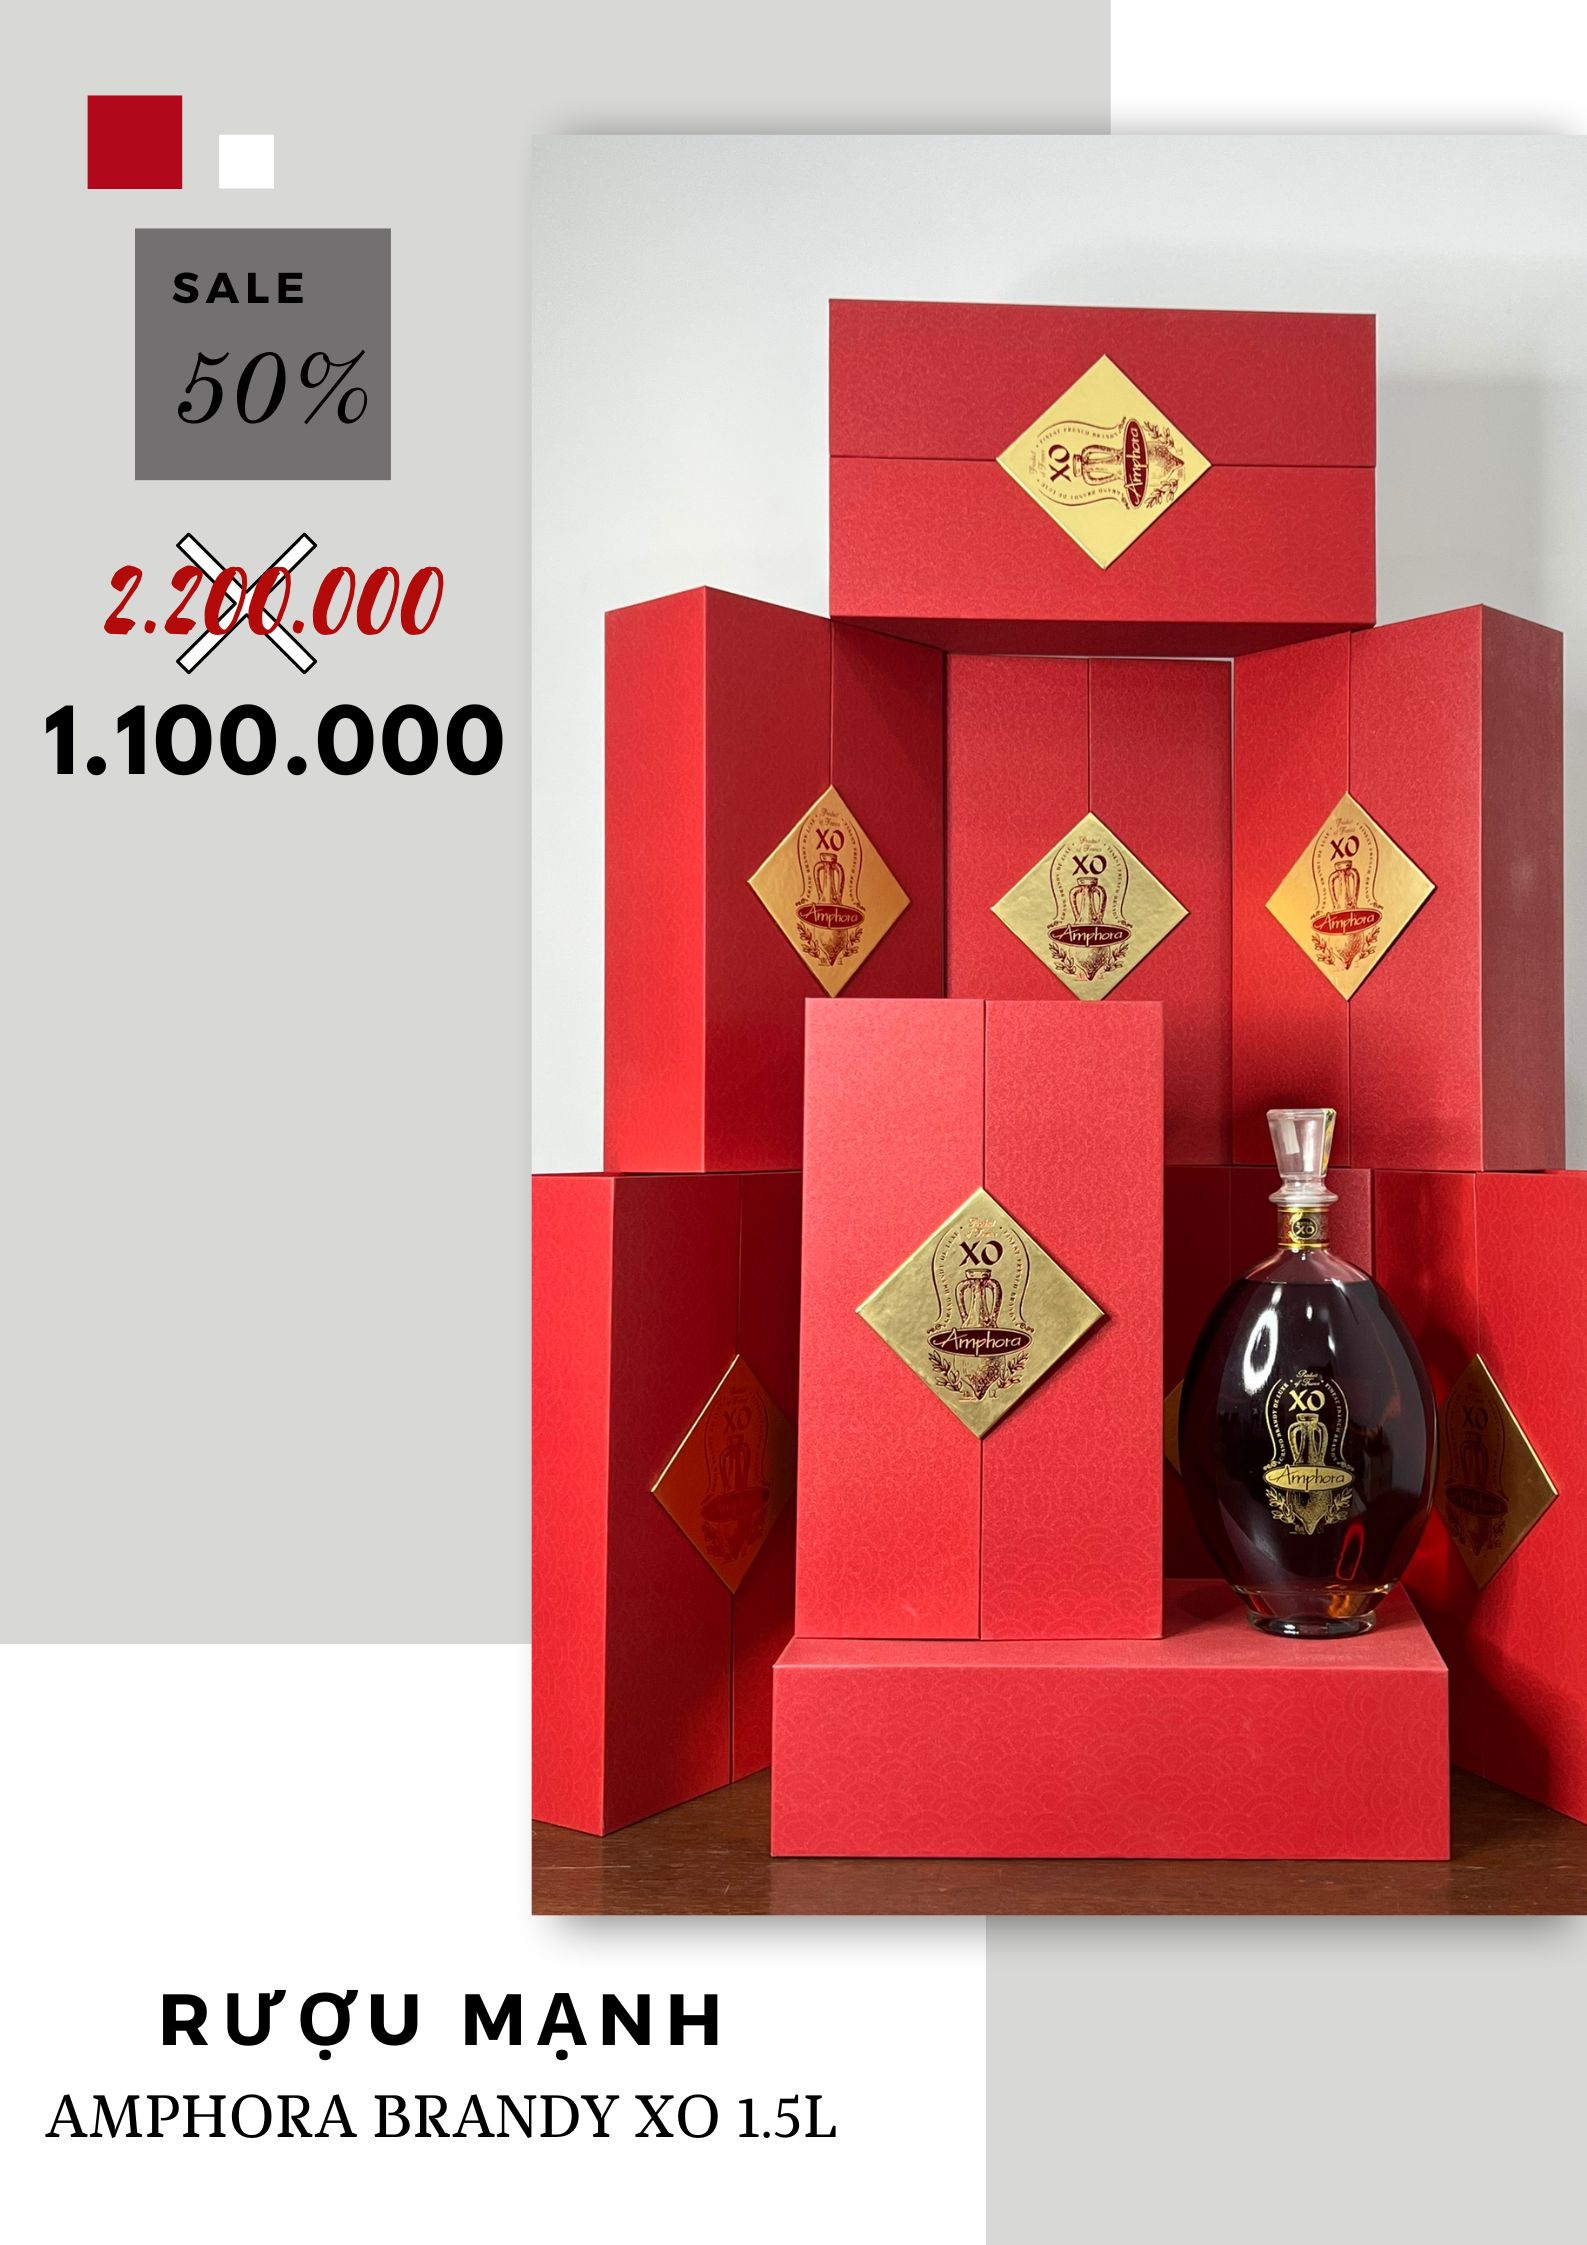 Rượu mạnh amphora brandy XO 1.5L